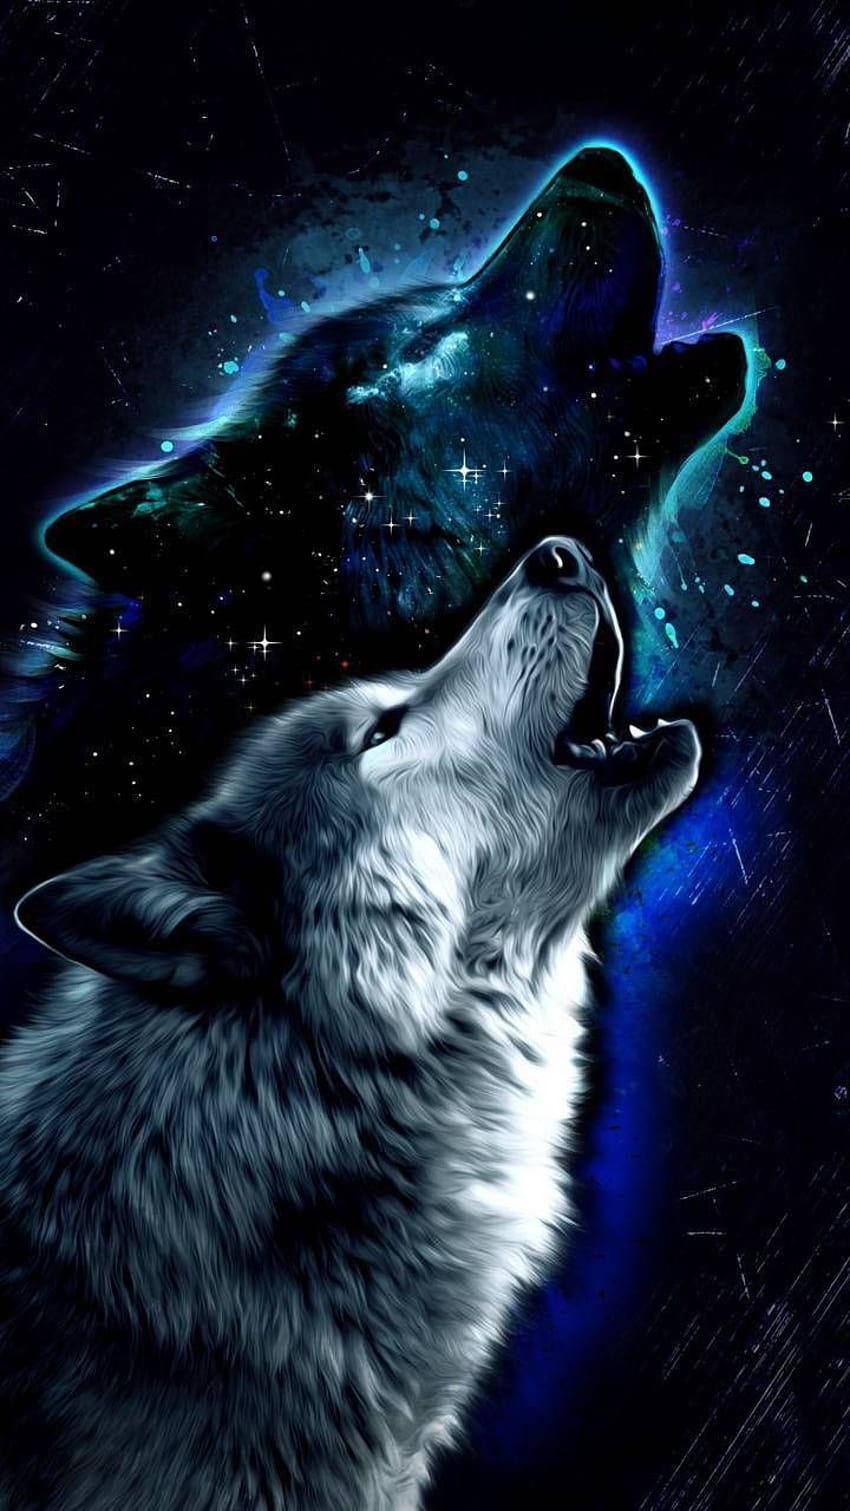 Nếu bạn thích chó sói và những hình ảnh về hành tinh xa xôi, hãy thử xem những hình nền độc đáo của Galaxy Wolf. Các hình ảnh được tạo ra bởi những nhà nghệ sĩ tài ba, giúp cho máy tính hoặc điện thoại của bạn trở nên vô cùng độc đáo và nổi bật.